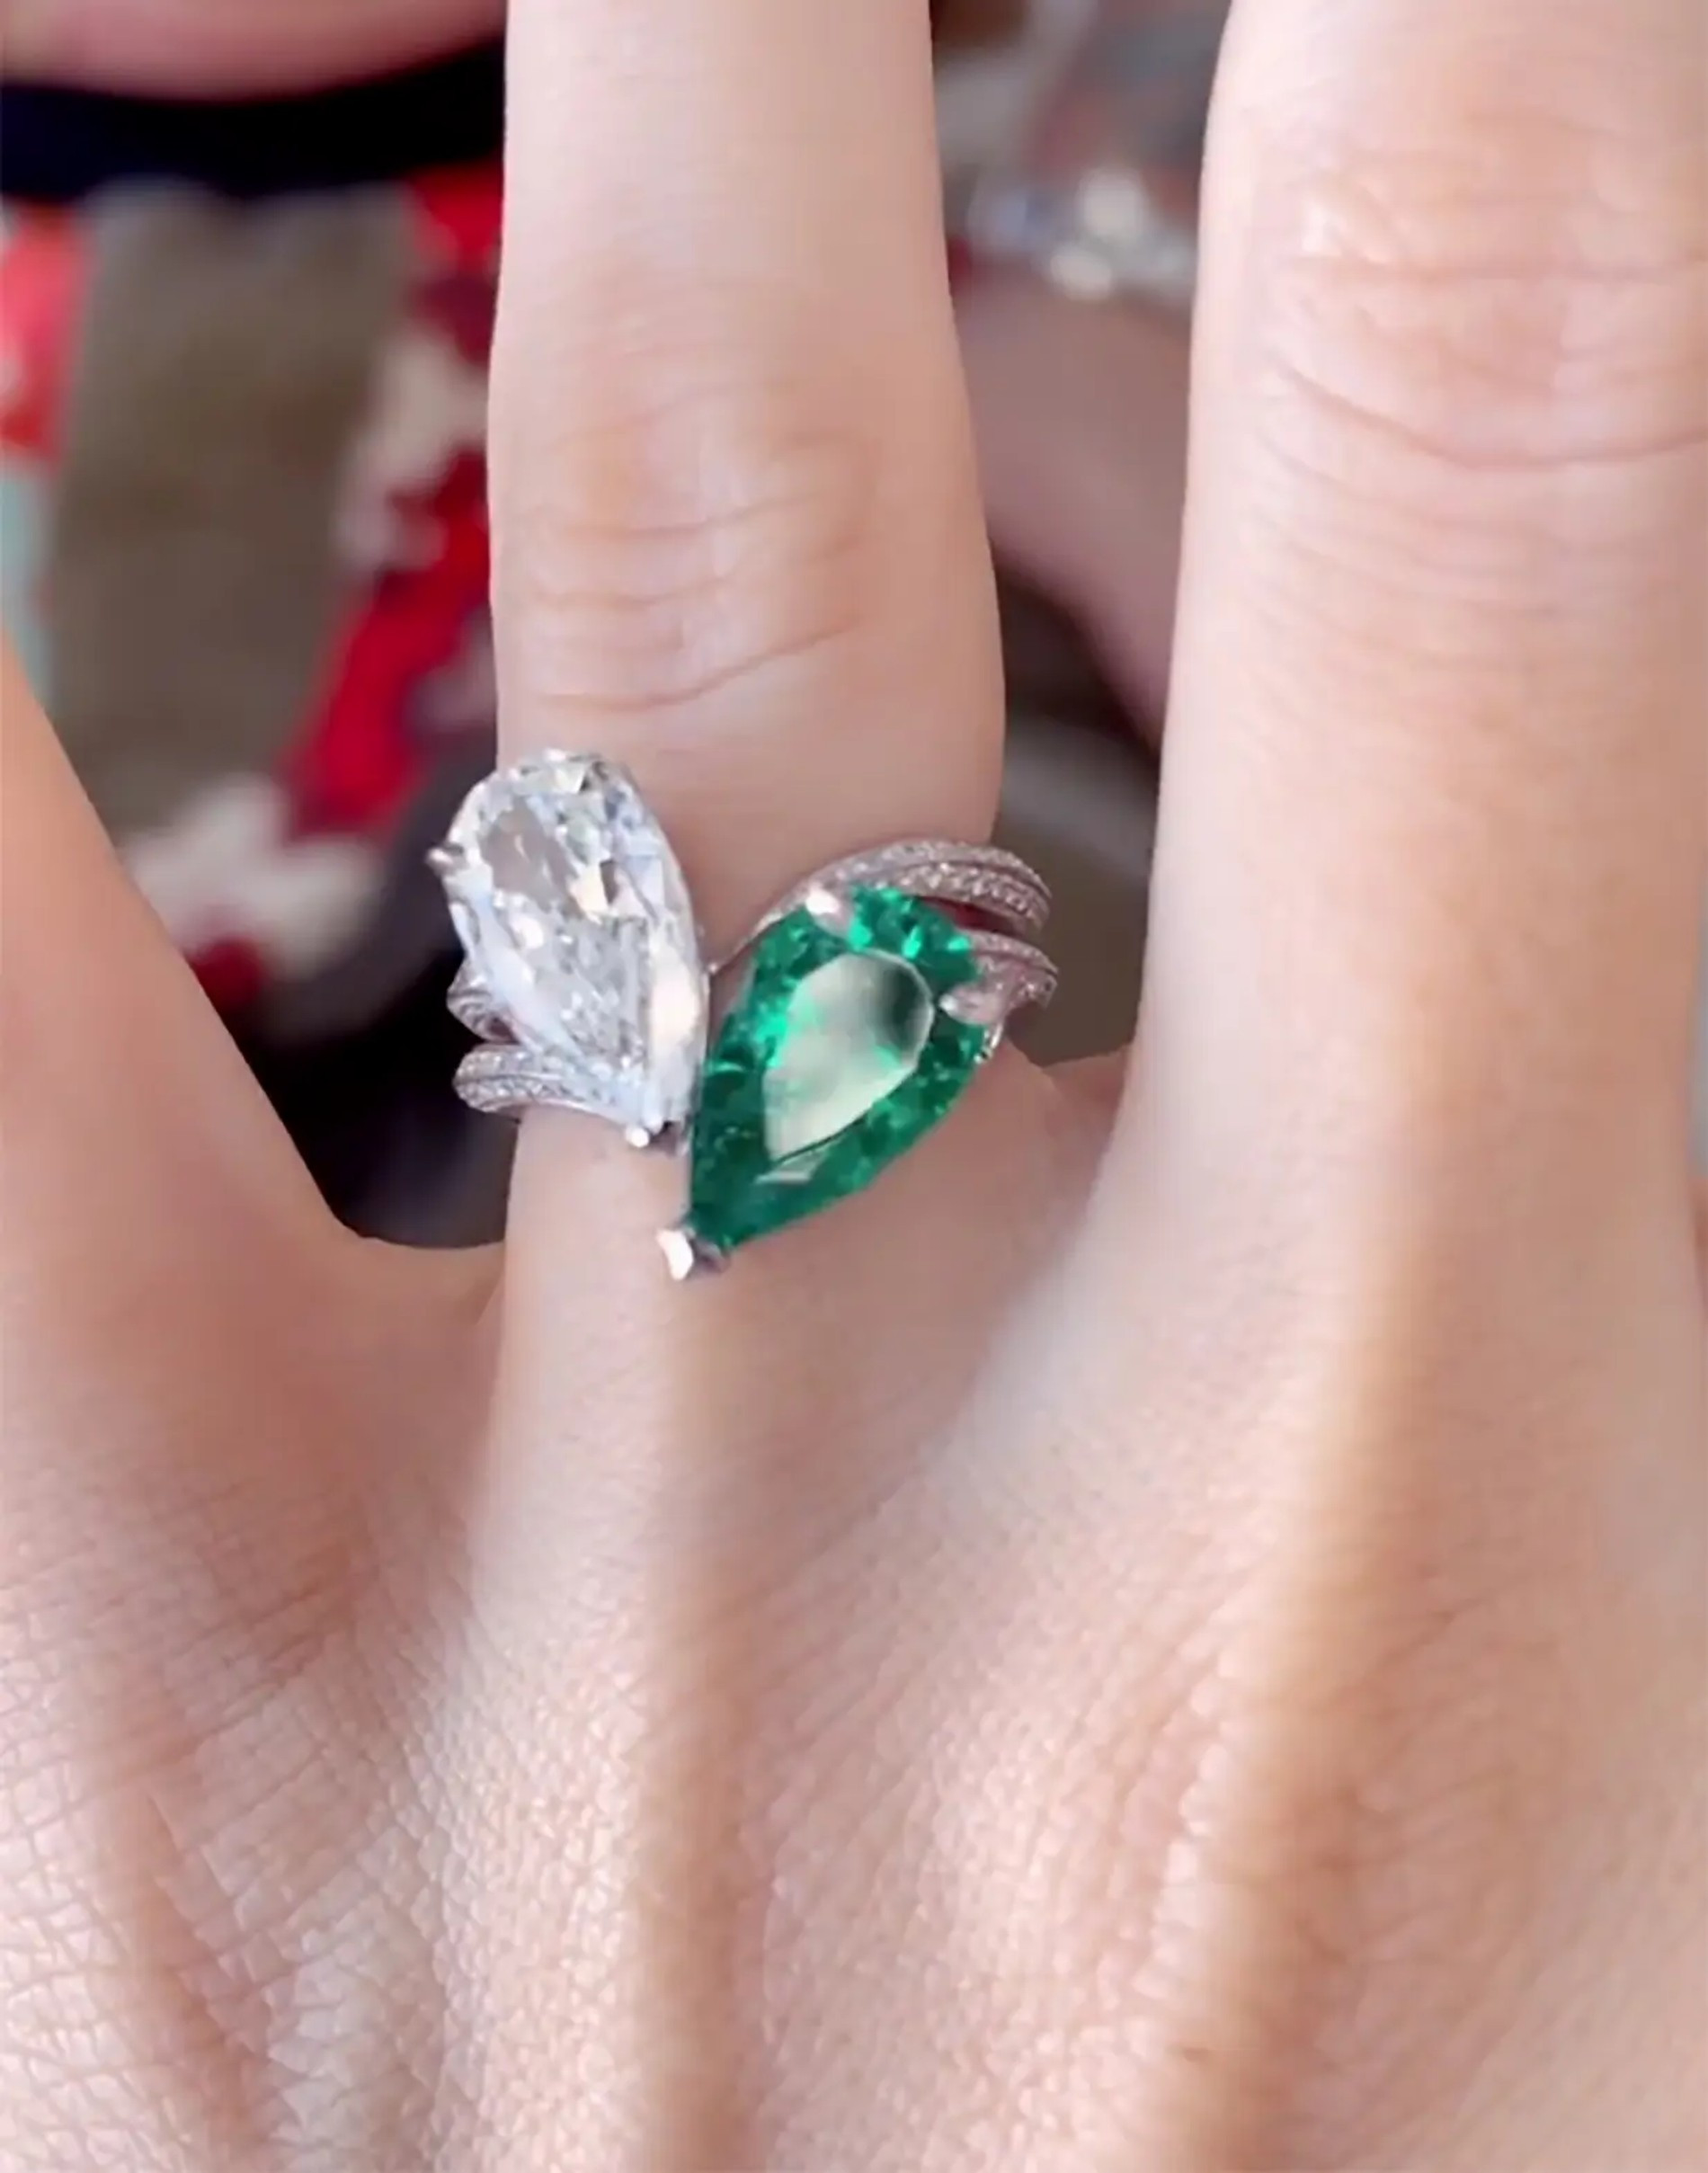 Обручальное кольцо, которое Колсон Бэйкер подарил Меган Фокс в 2022 году
Фото: Инстаграм (запрещен в РФ)